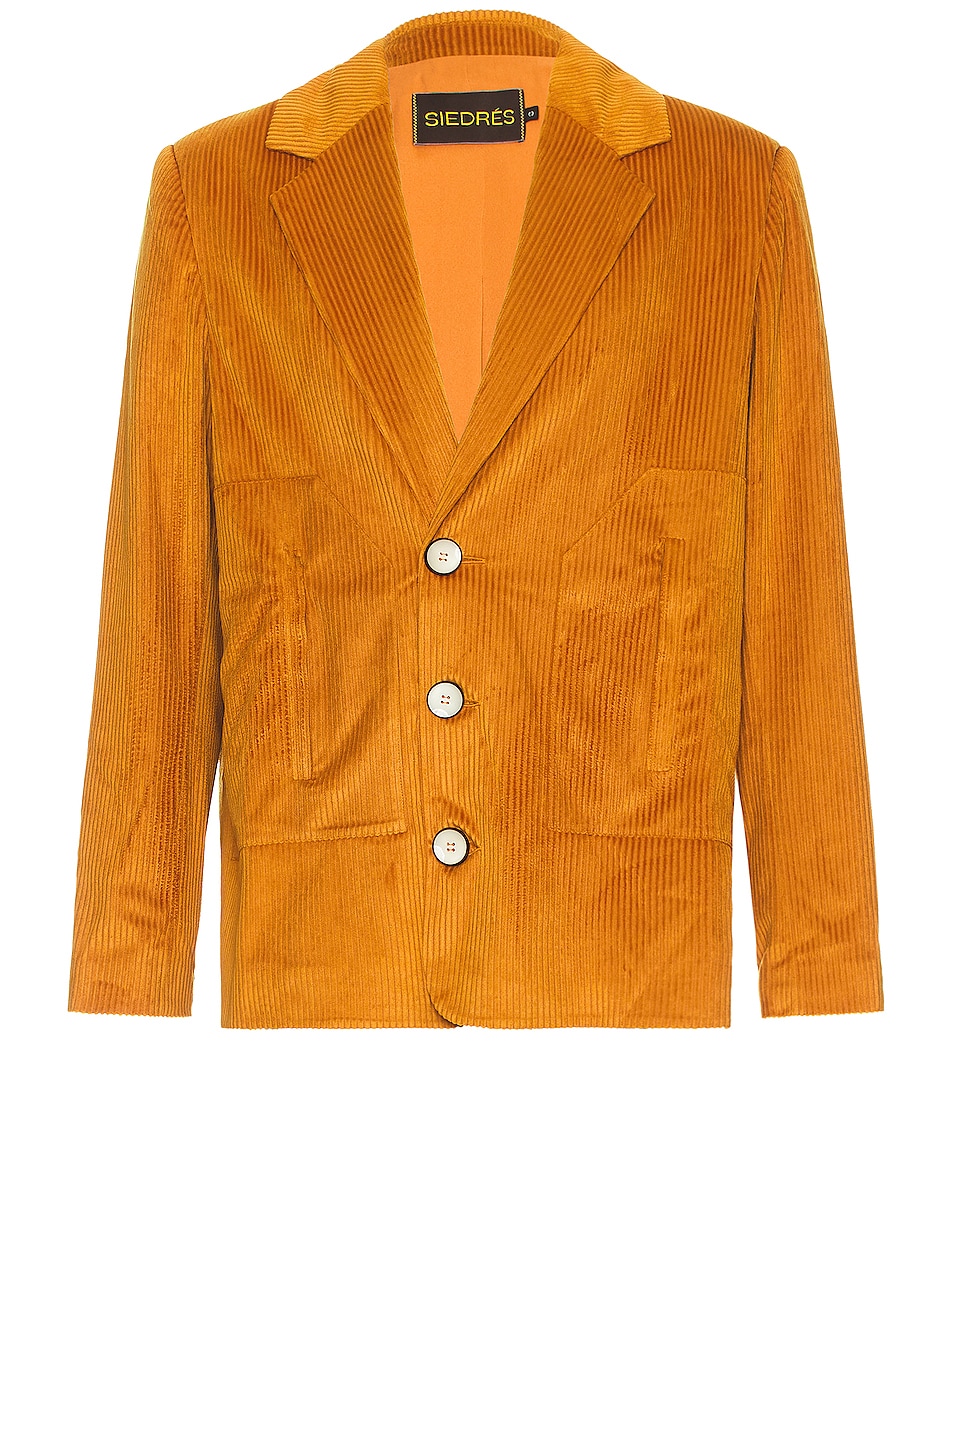 Куртка Siedres Corduroy Suit, цвет Mustard